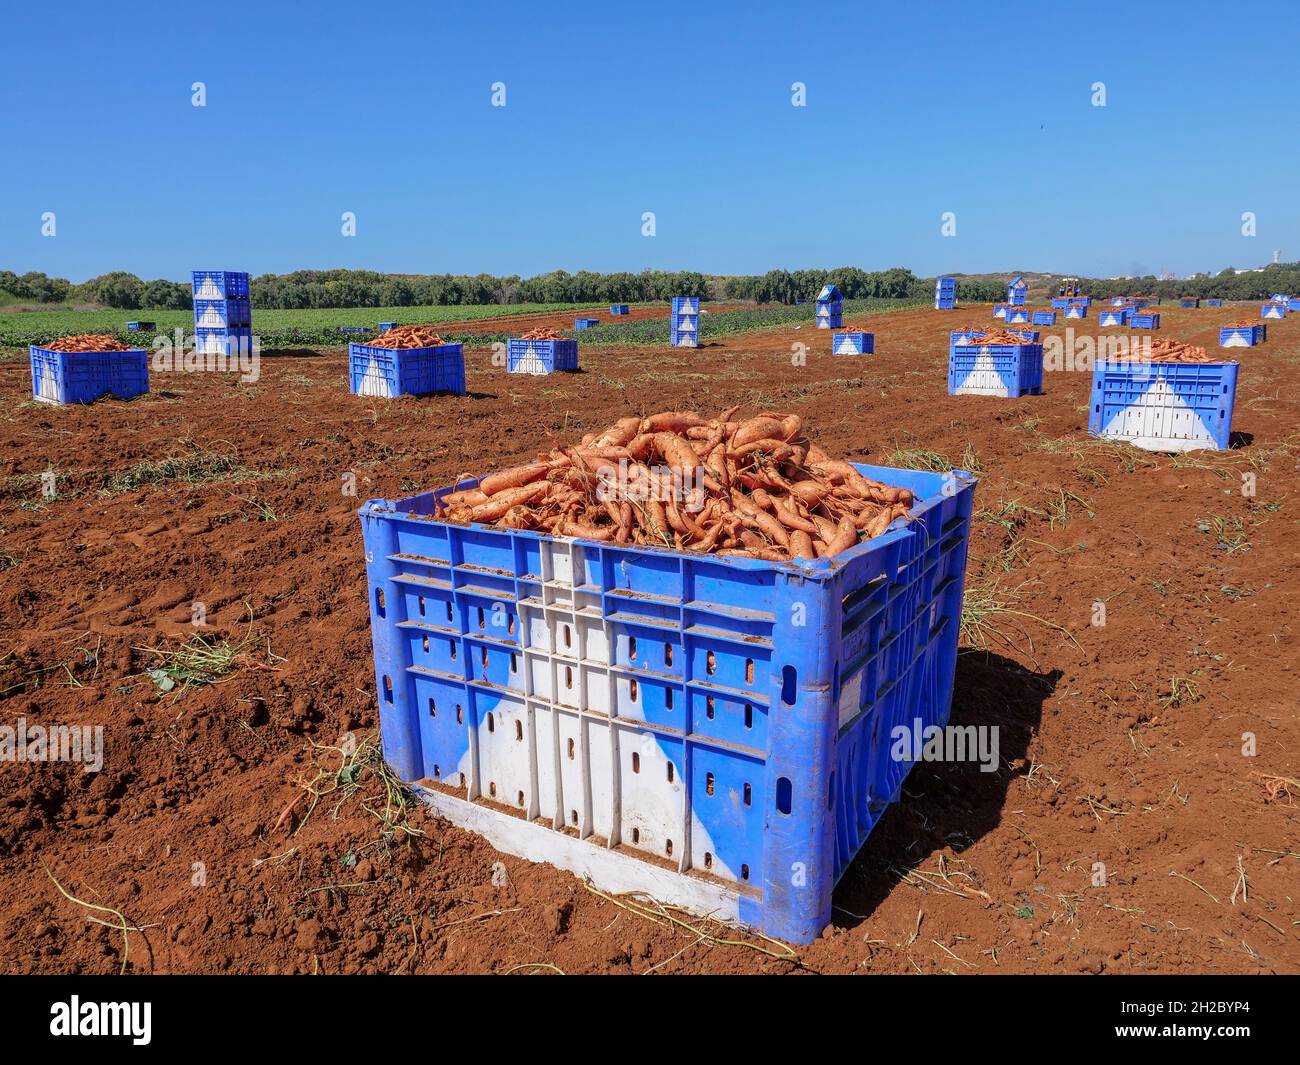 Pallet di patate dolci scavate fresche in un campo. Foto Stock